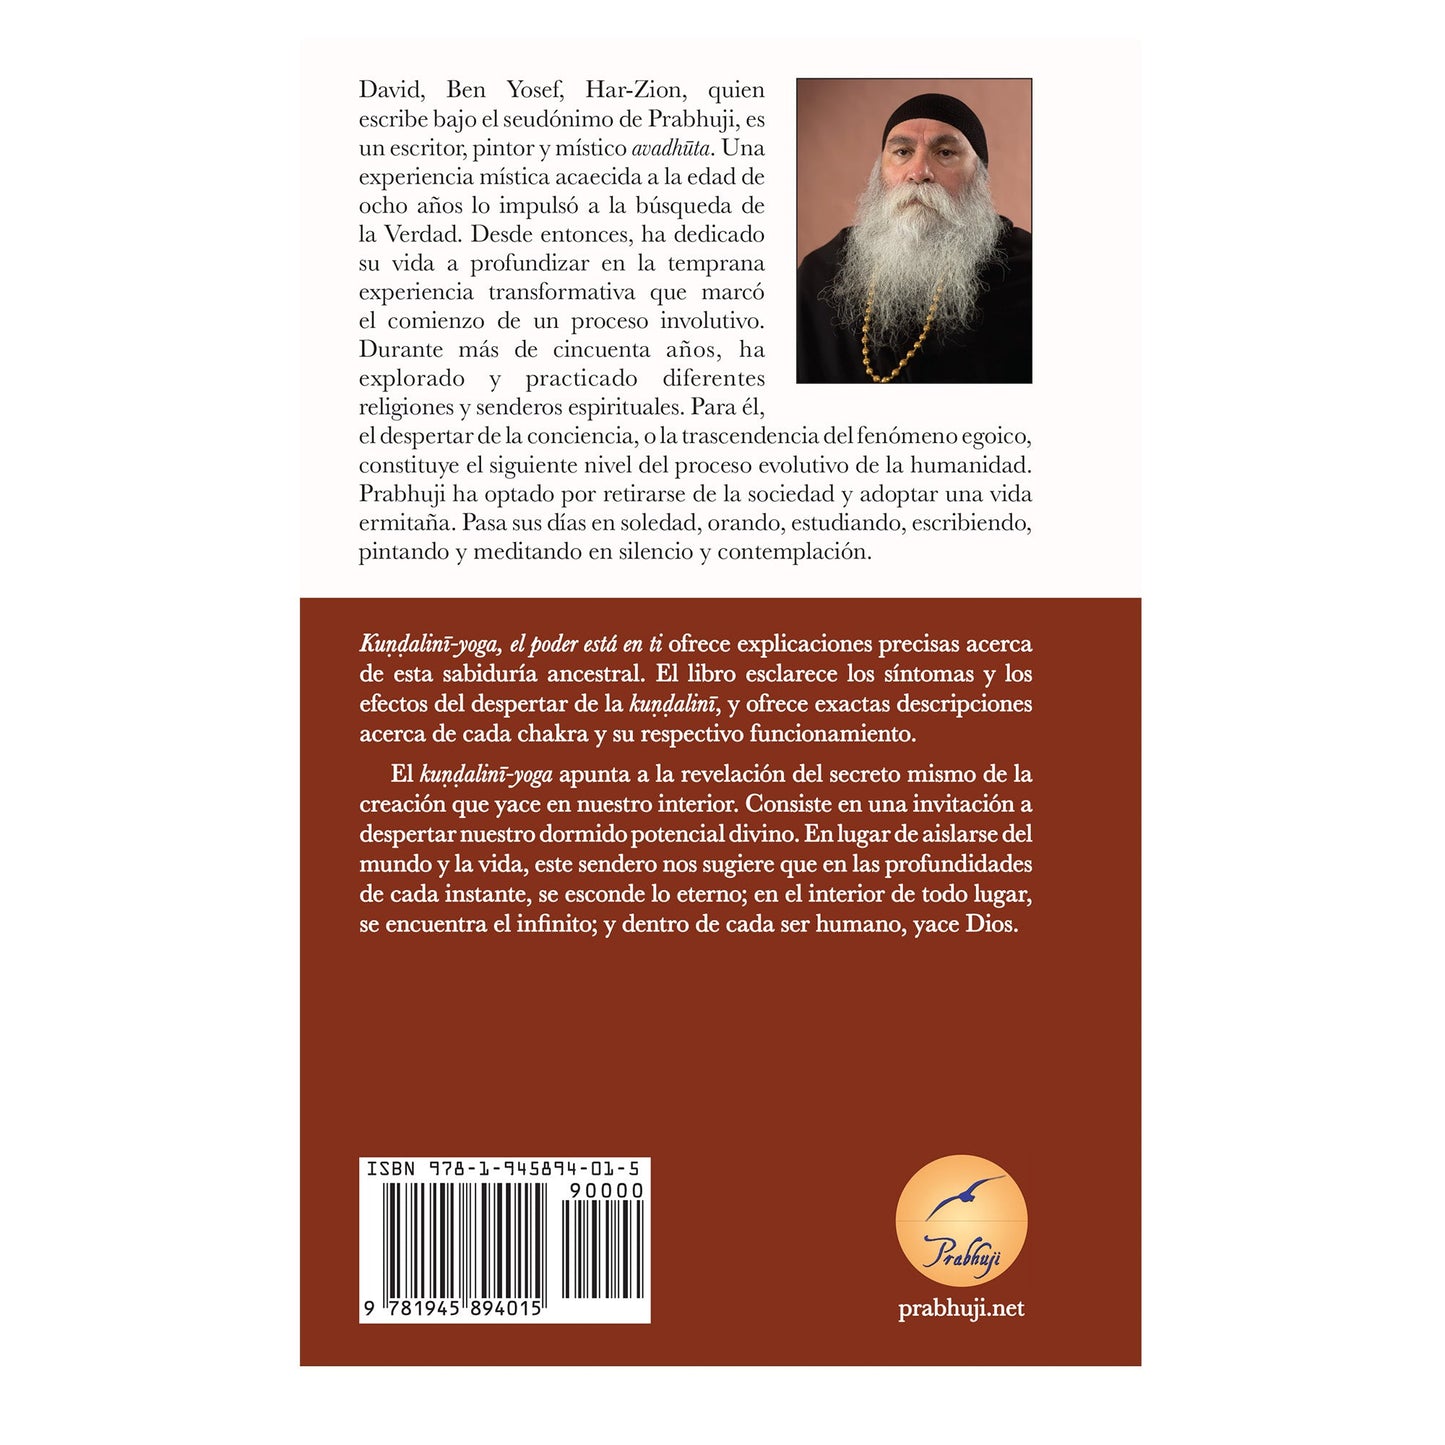 Book Kundalini yoga - el poder esta en ti con Prabhuji (Hard cover - Spanish)